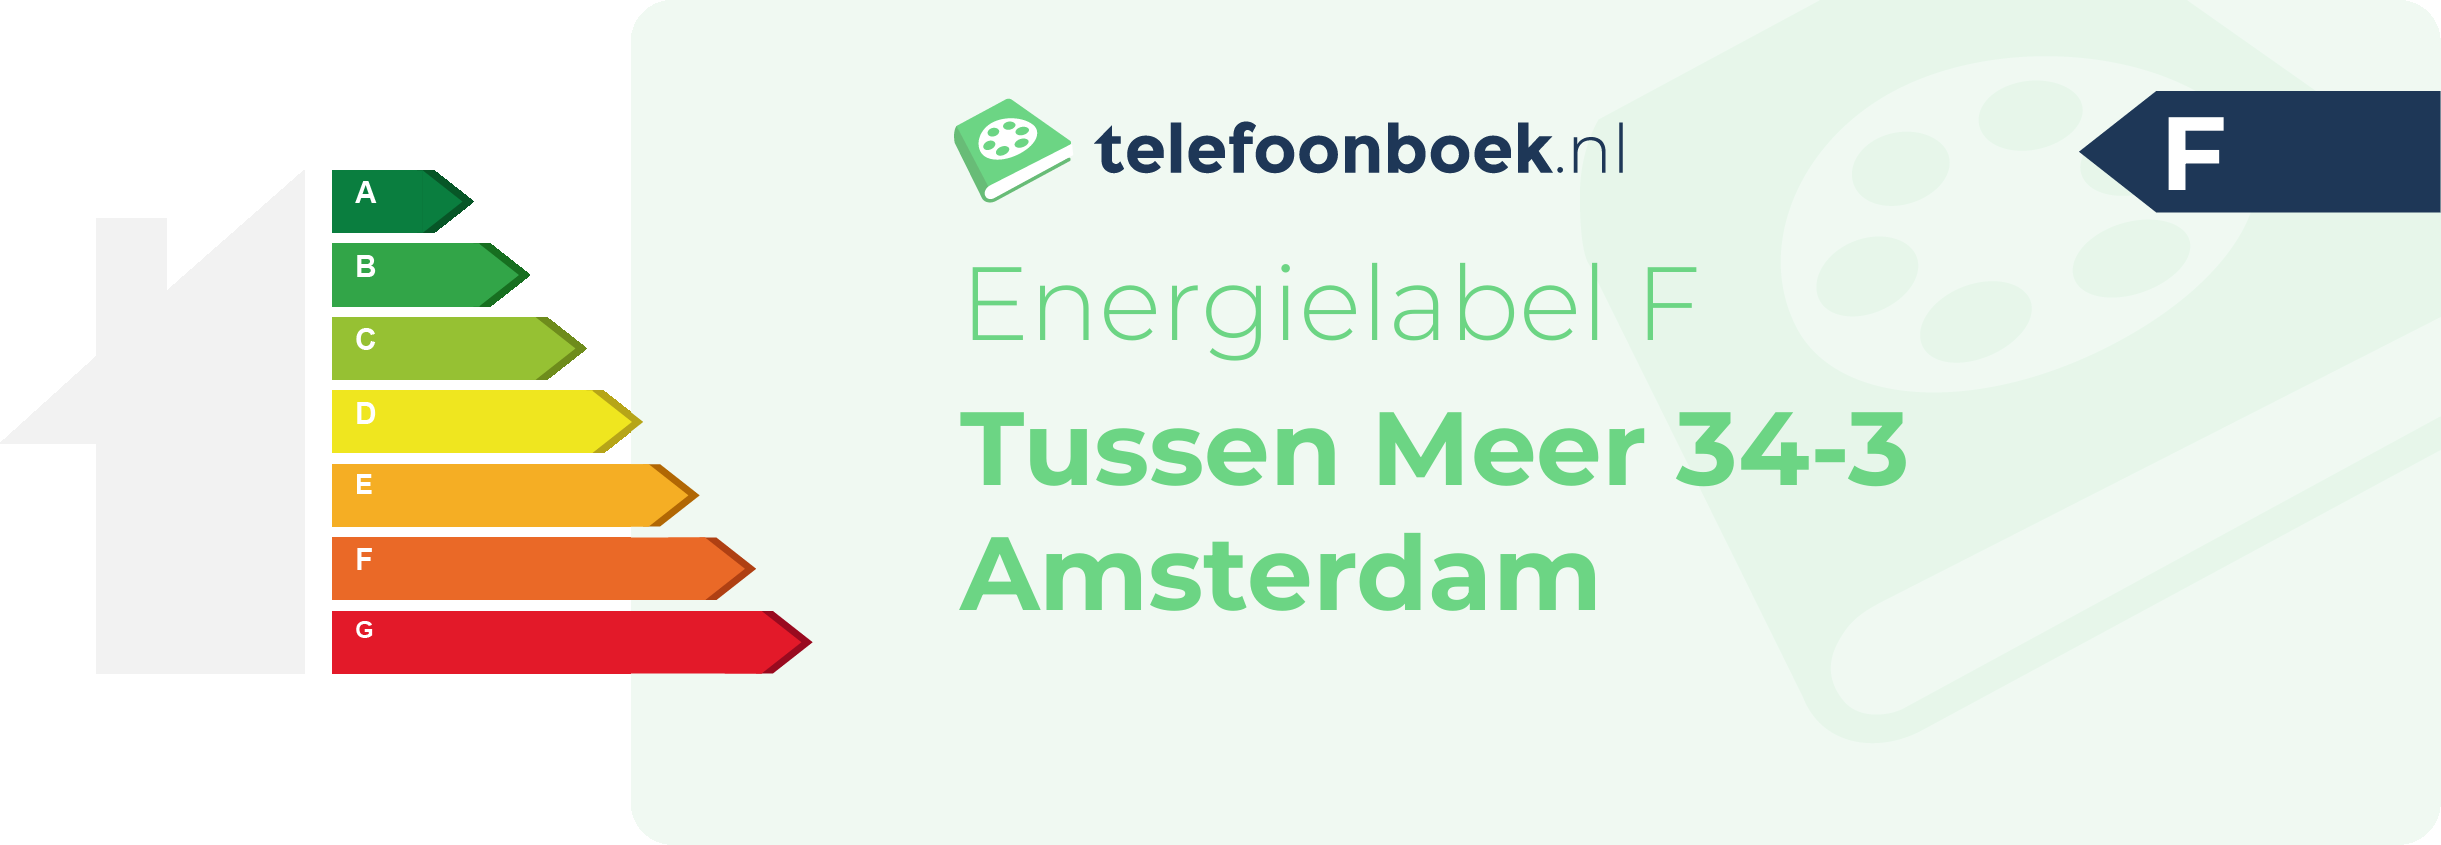 Energielabel Tussen Meer 34-3 Amsterdam